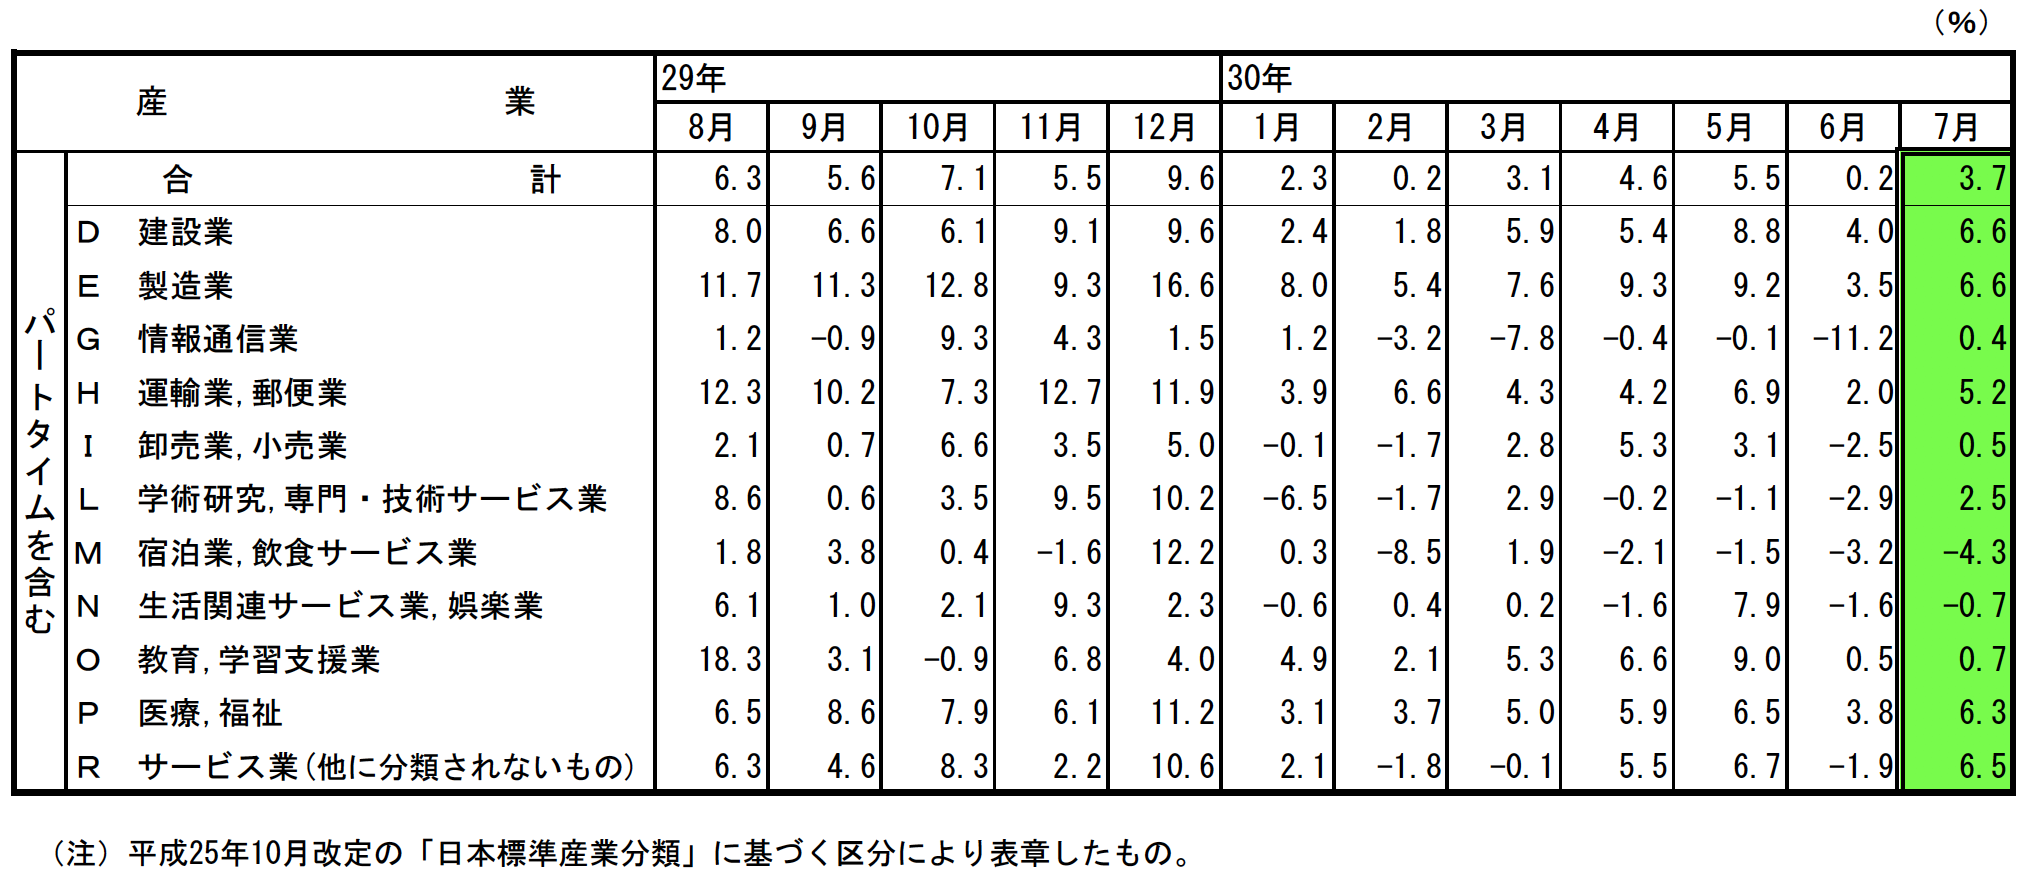 主要産業における対前年同月比の推移